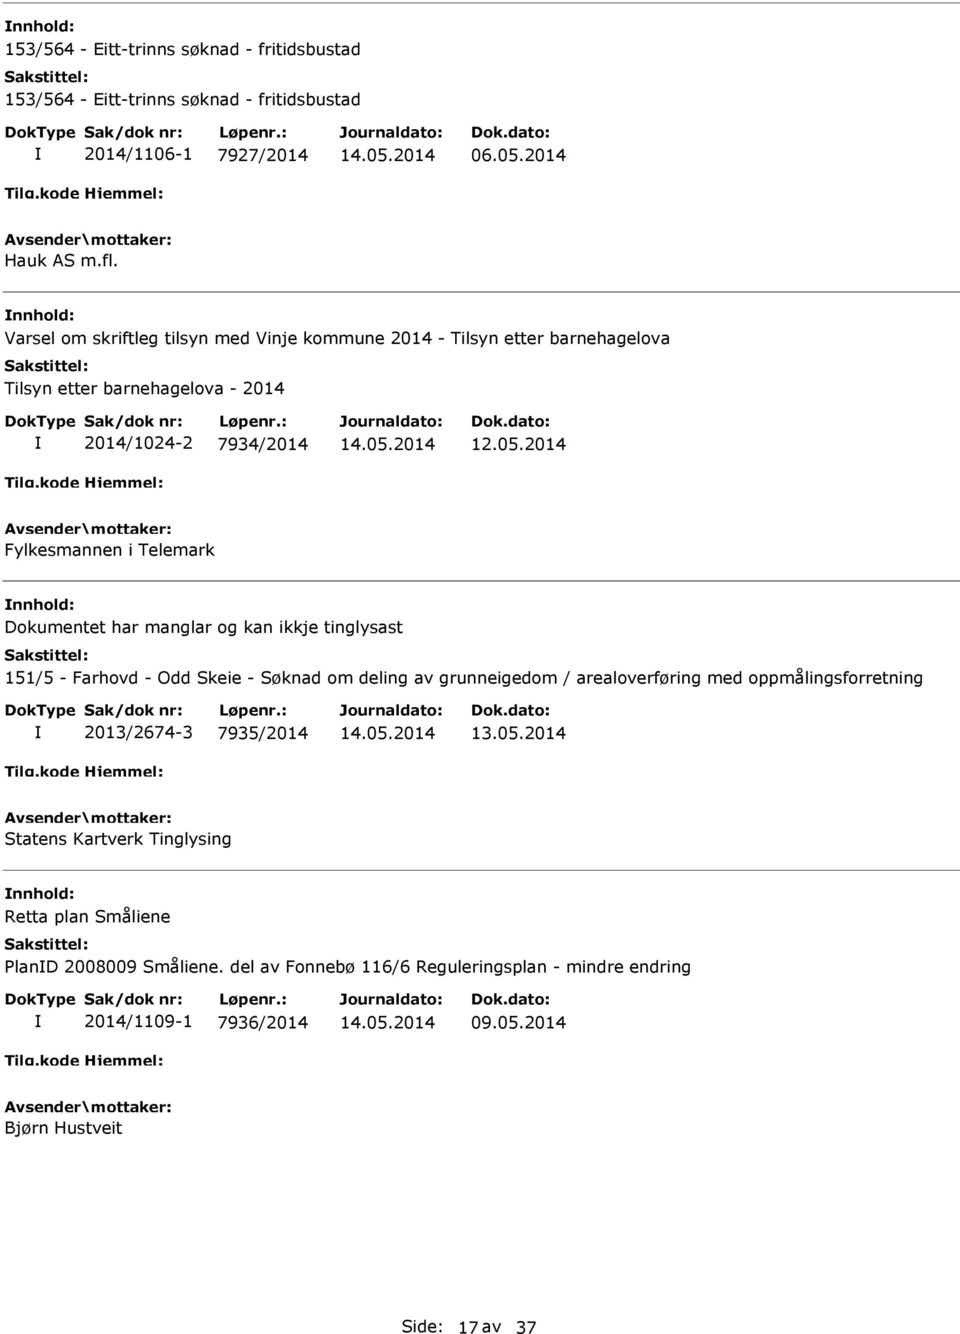 2014 Fylkesmannen i Telemark nnhold: Dokumentet har manglar og kan ikkje tinglysast 151/5 - Farhovd - Odd Skeie - Søknad om deling av grunneigedom / arealoverføring med